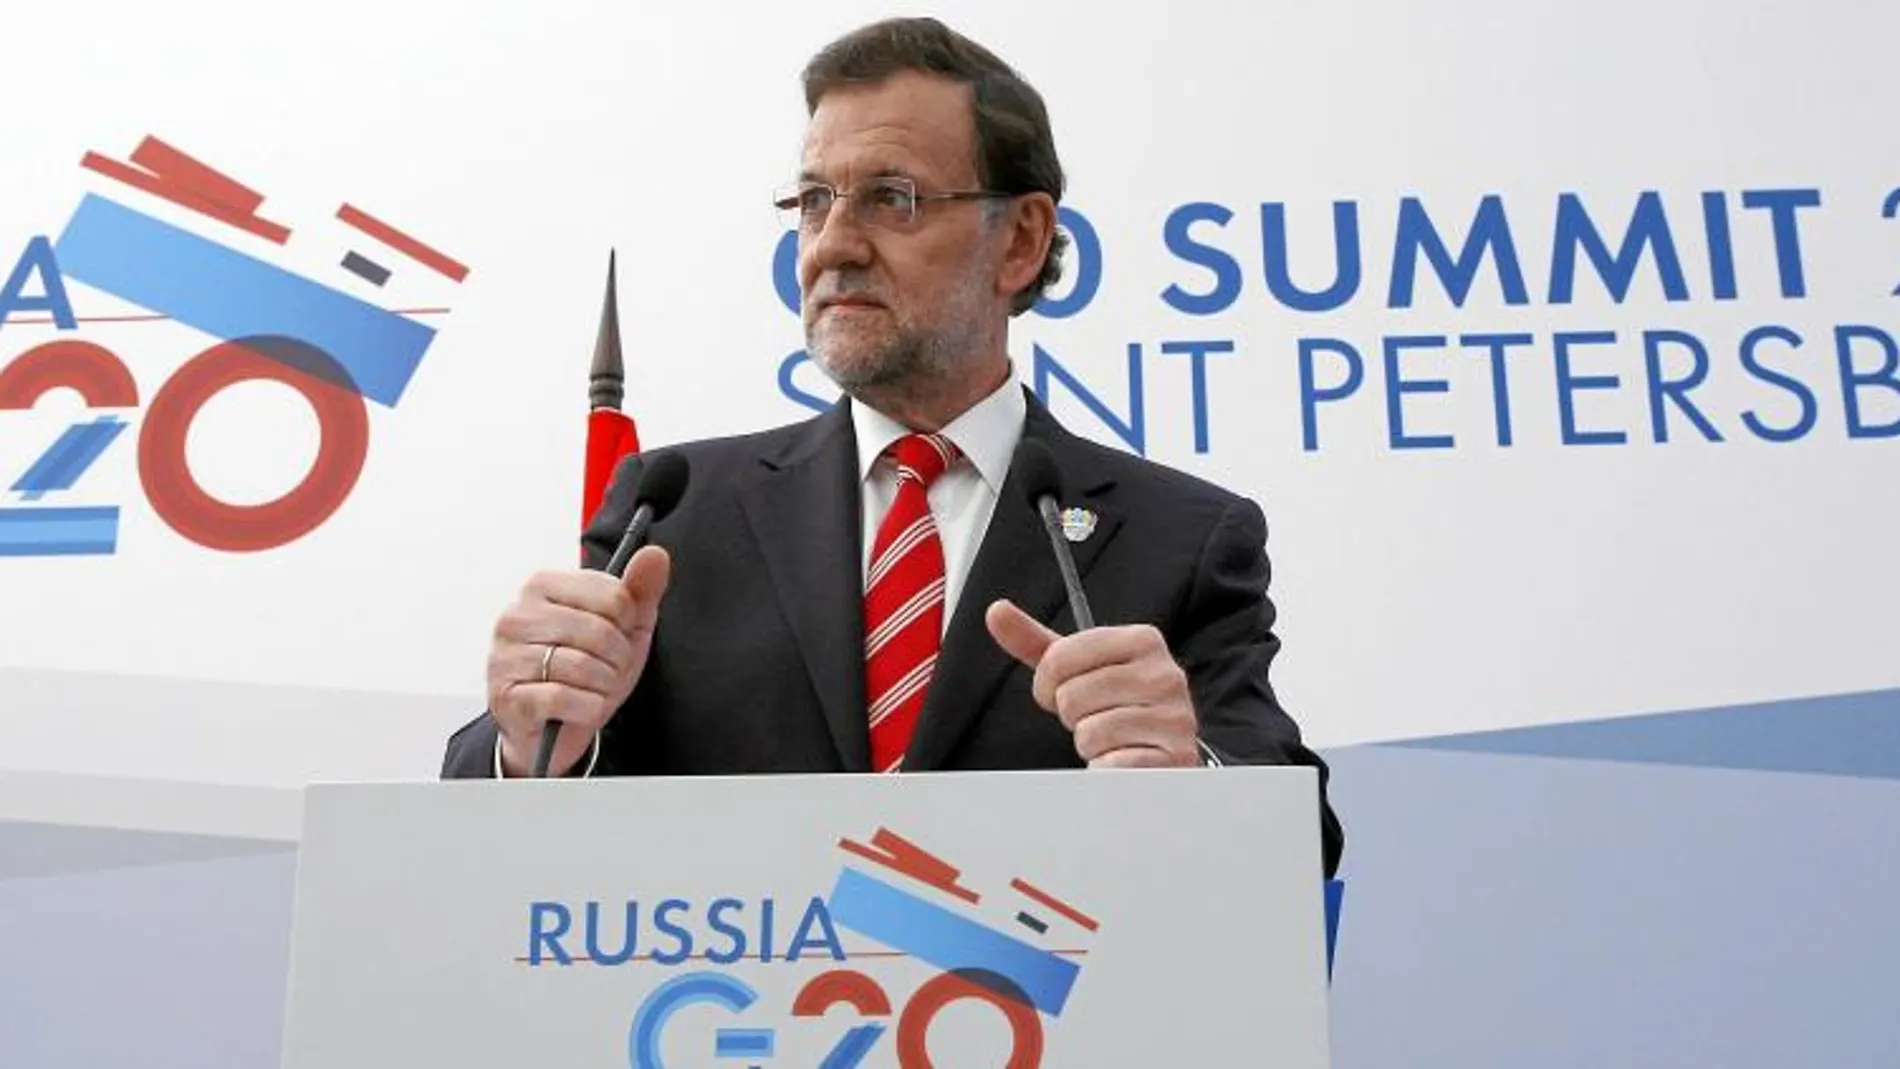 El presidente del Gobierno, Mariano Rajoy, participó ayer y el jueves en la cumbre de líderes de gobierno del G-20 en San Petersburgo, donde se alabó la recuperación de España